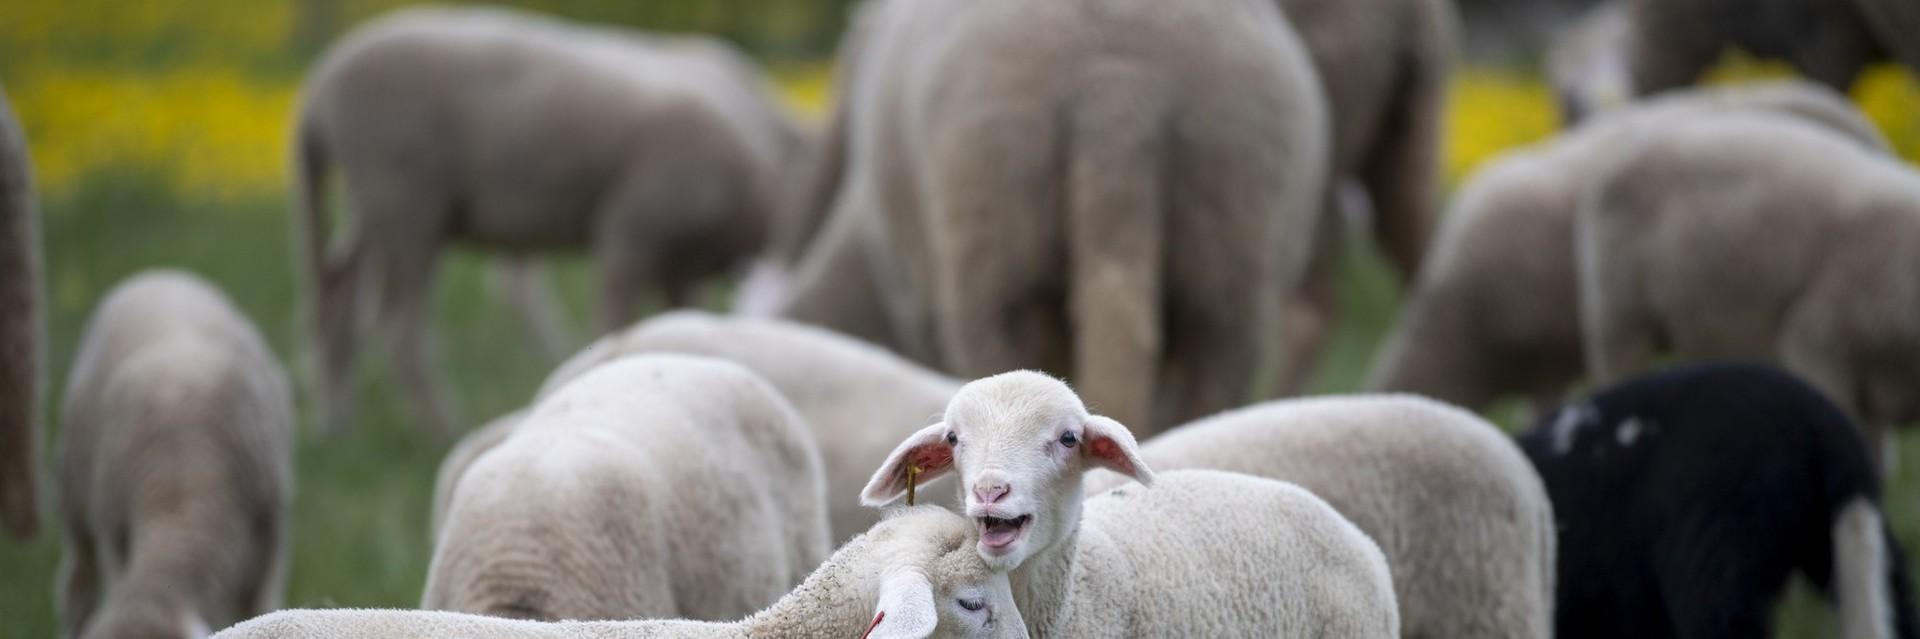 Two merino lambs in a field